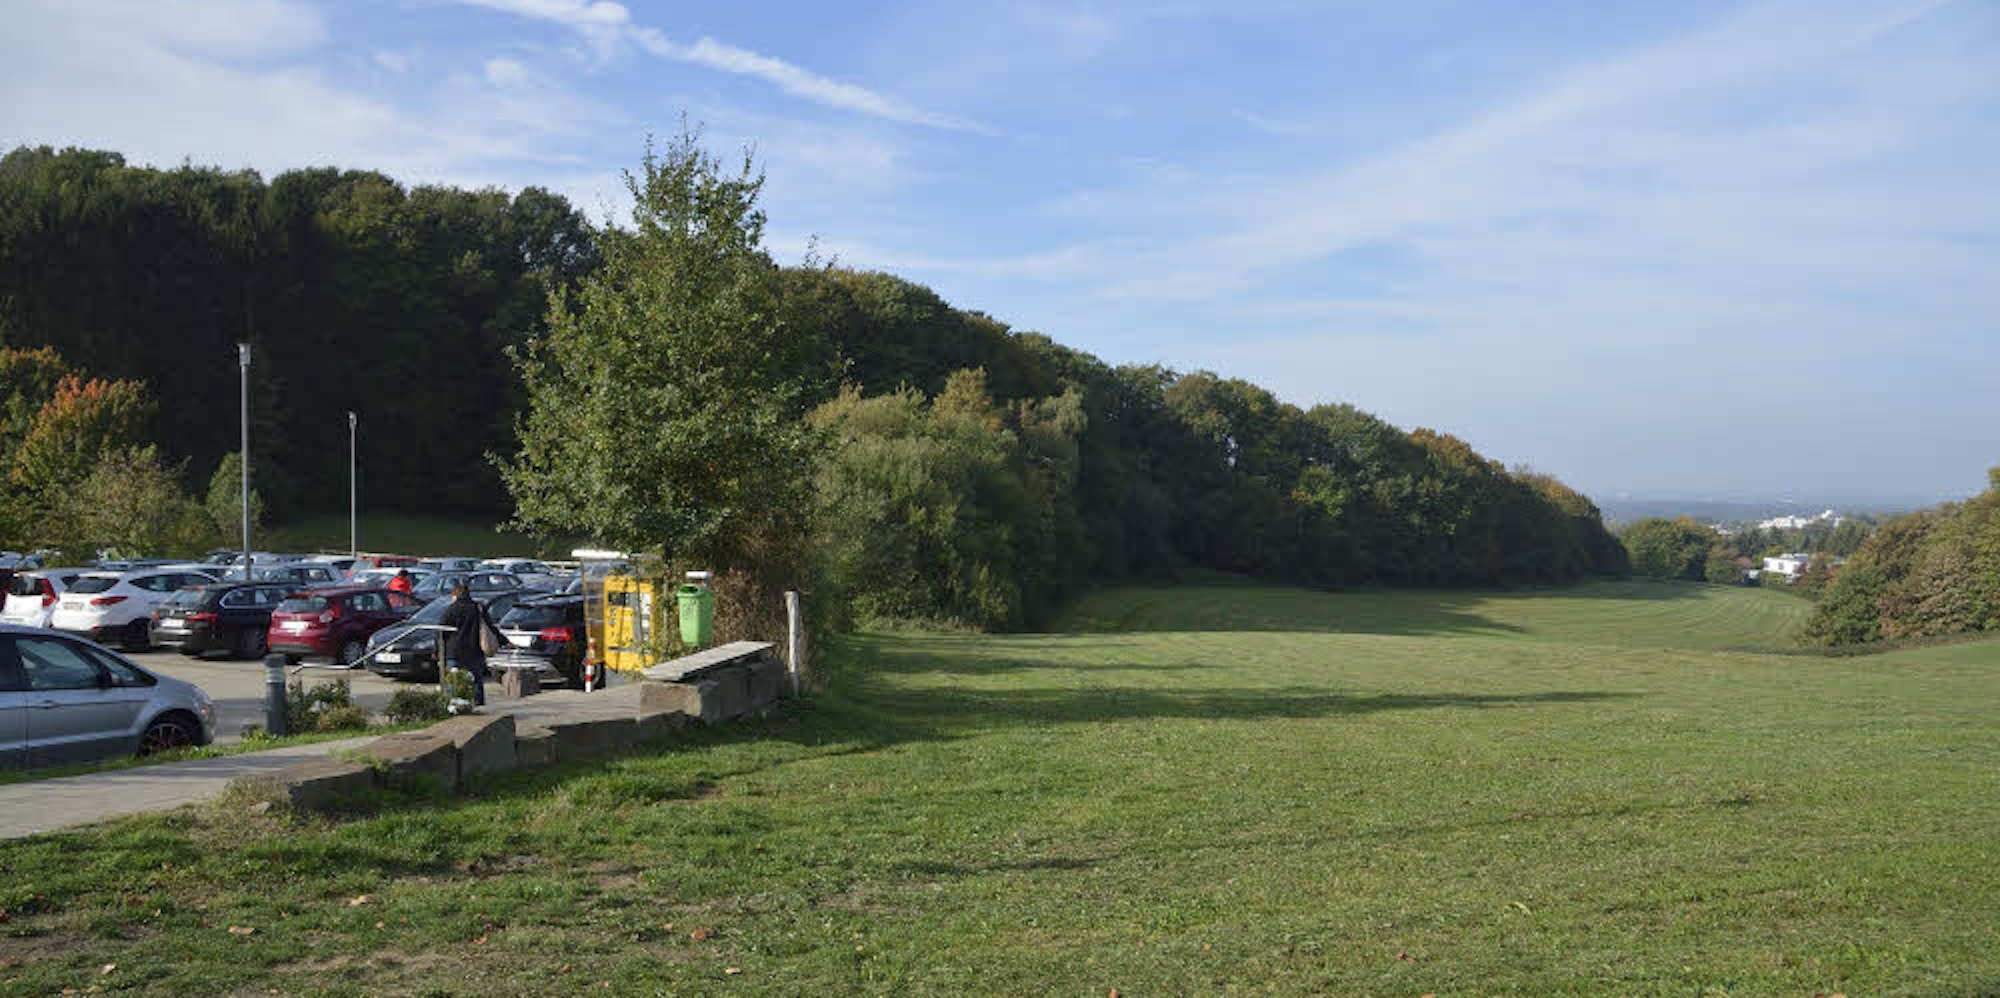 Die Grünanlage unterhalb des Vinzenz-Pallotti-Hospitals soll in einen Stadtgarten aufgewertet werden. Dazu gehört ein neuer Naturspielplatz im Wald links.